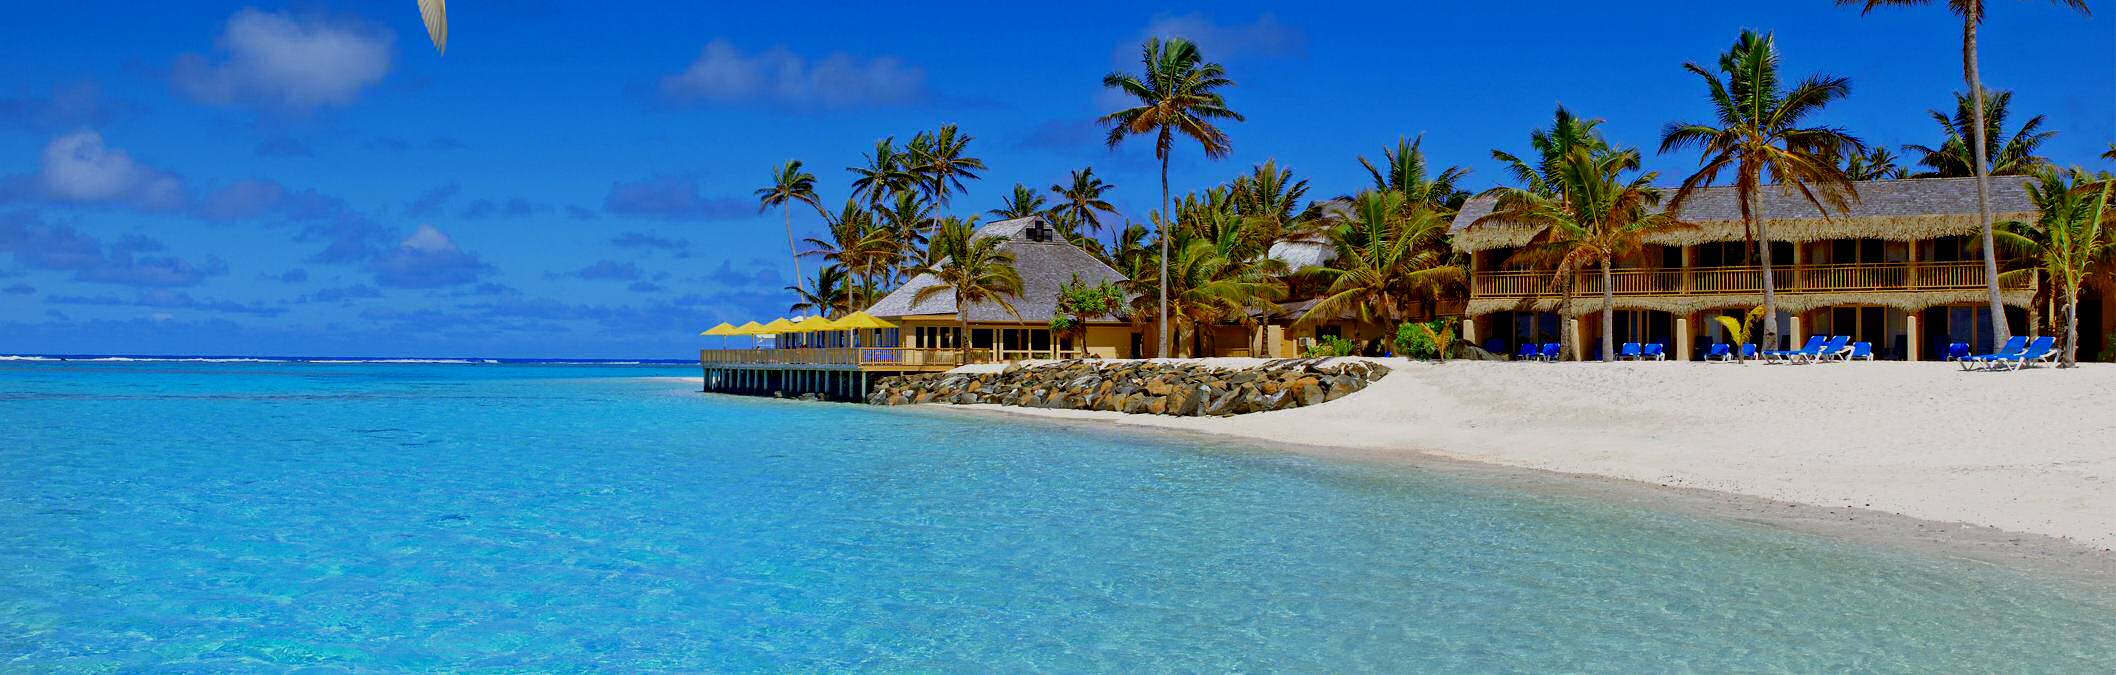 Cook Islands - healthy travel